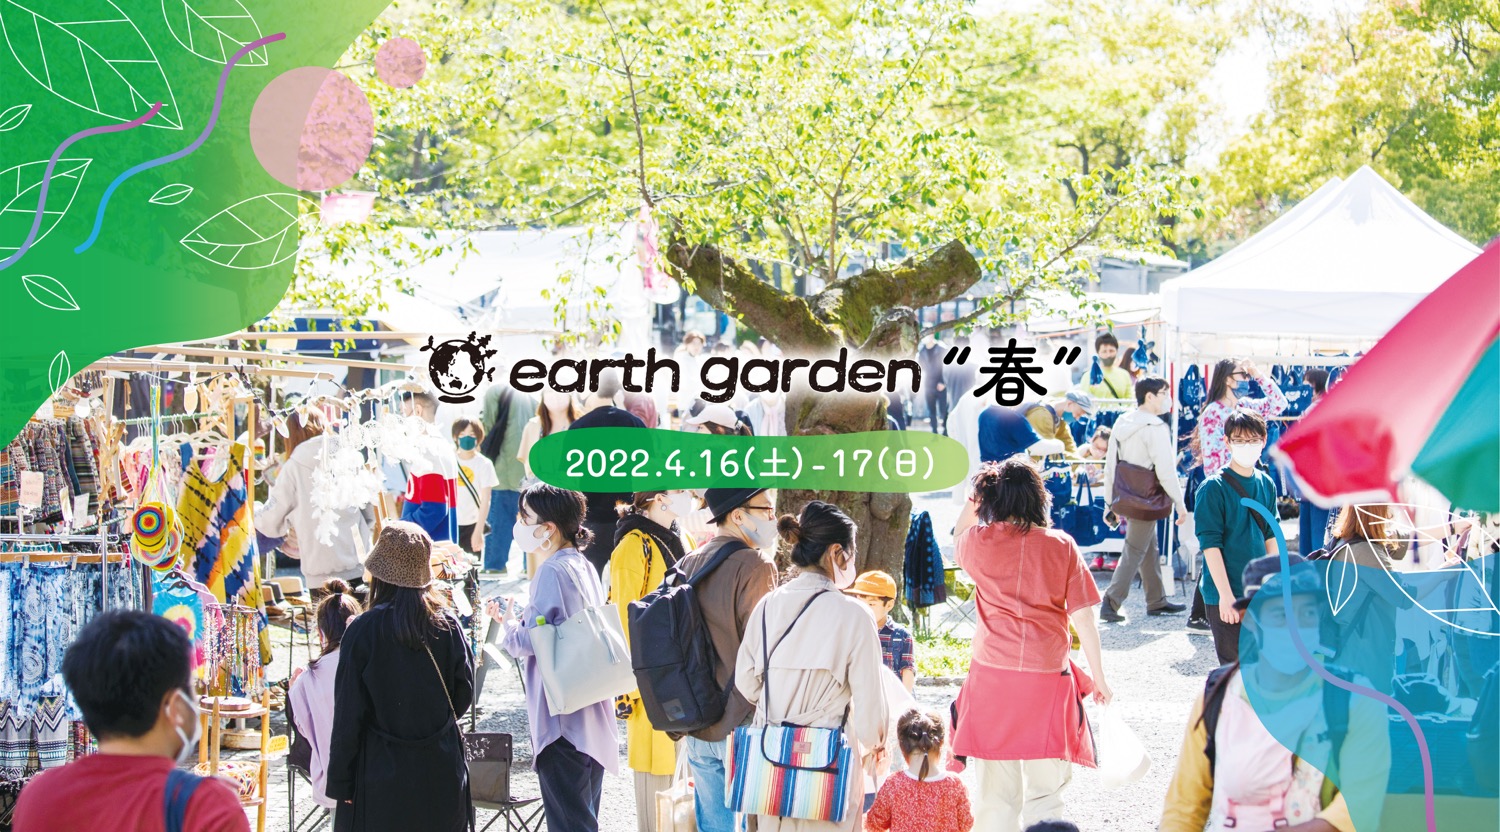 4/16(sat),17(sun)earth garden春出店します🎪